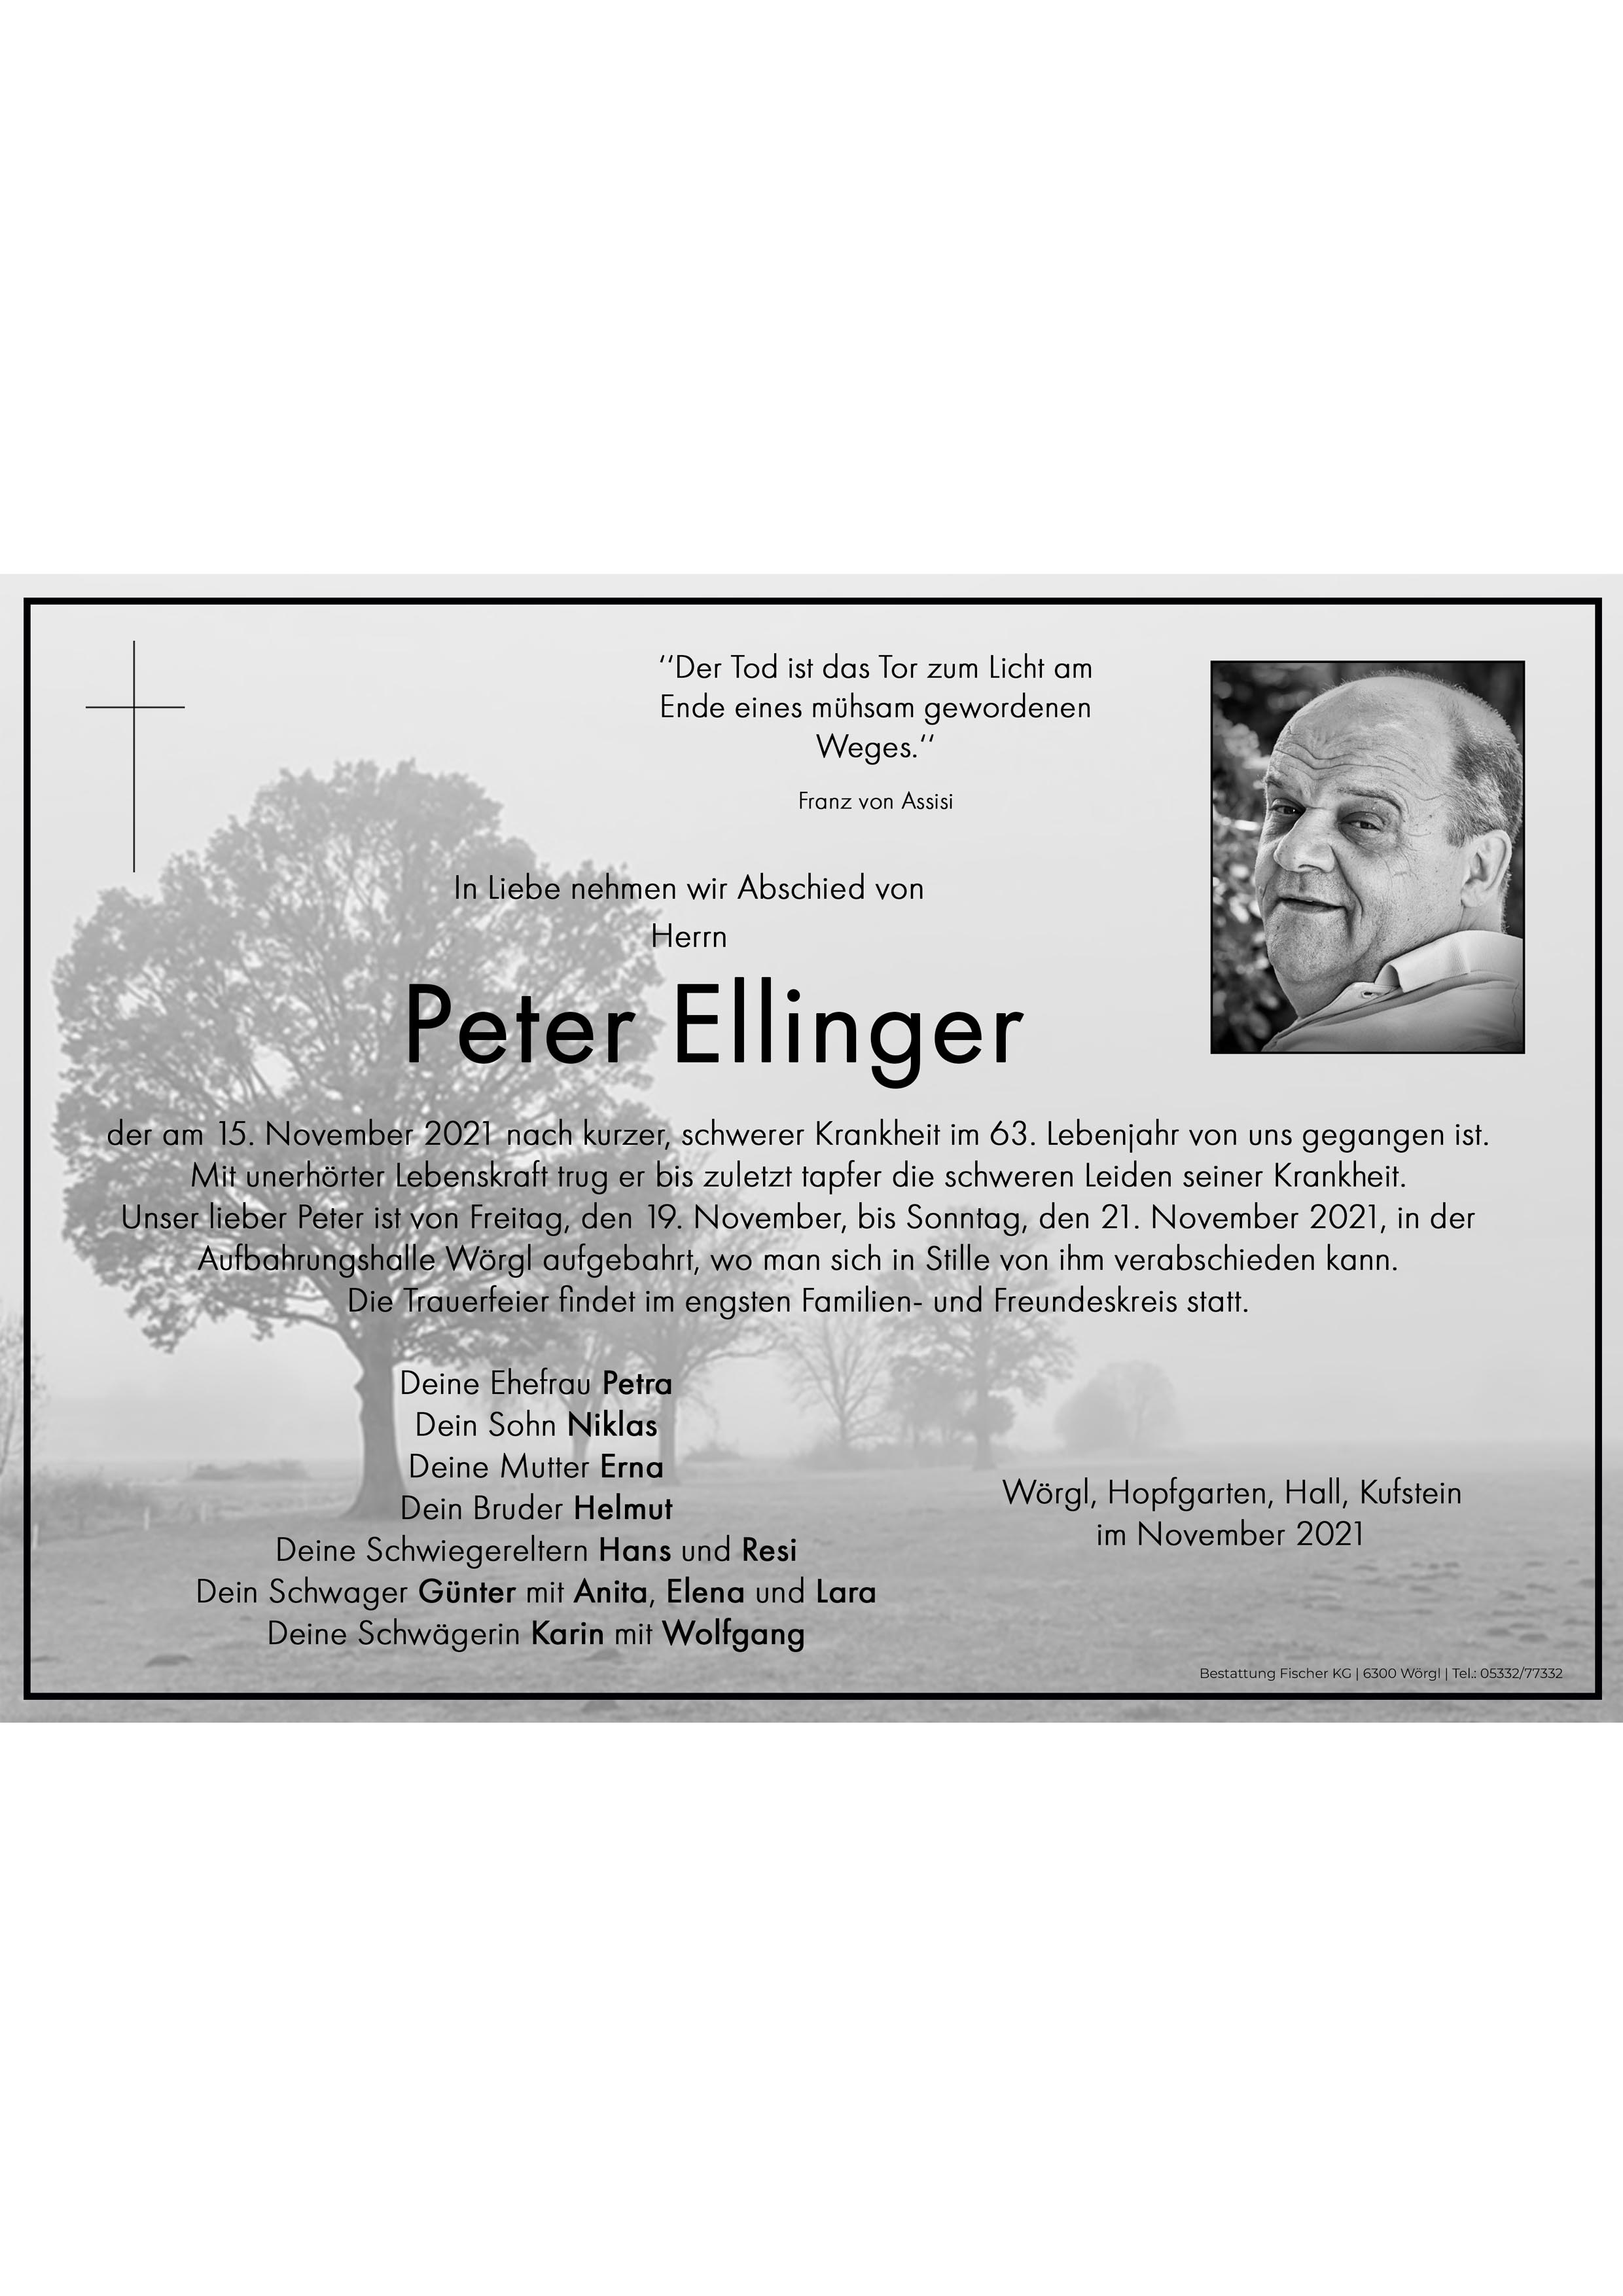 Peter Ellinger